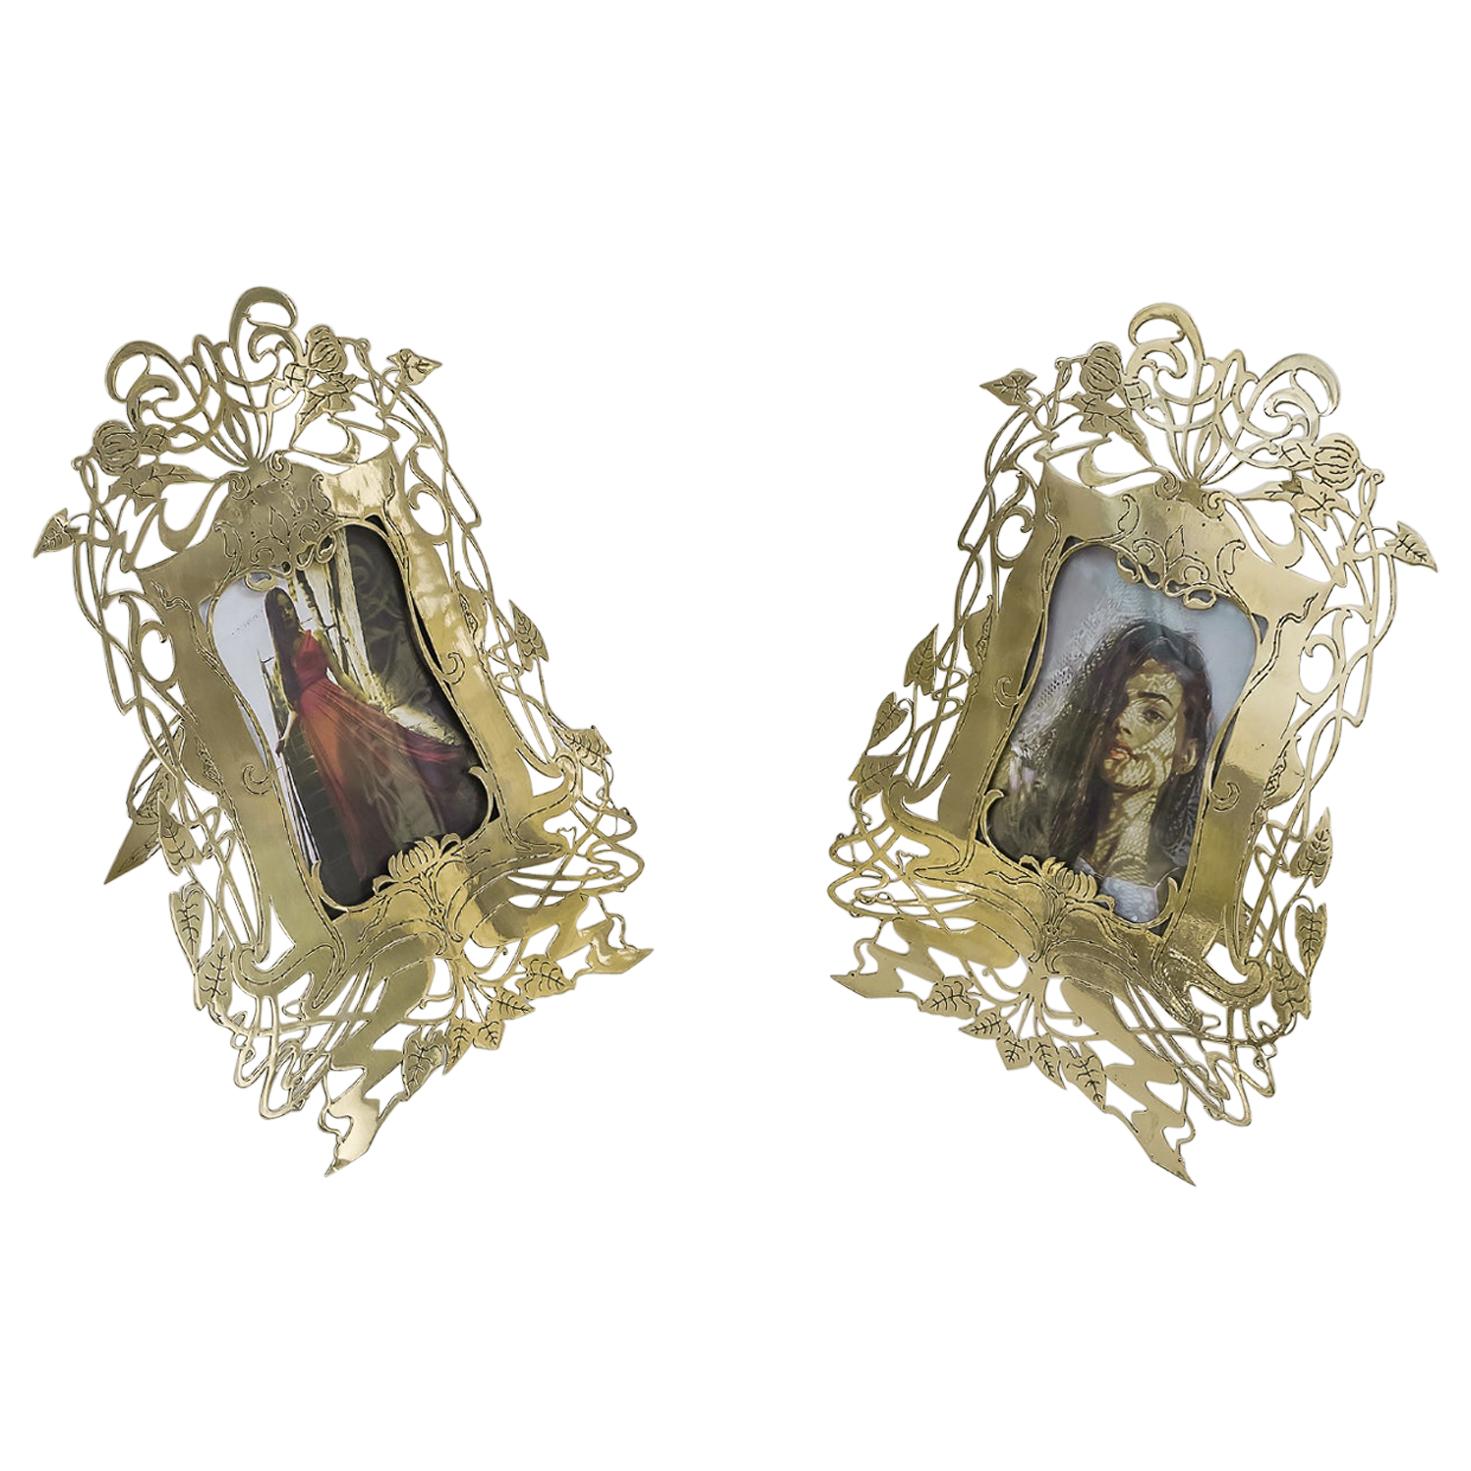 Two Jugendstil Picture Frames, Vienna, circa 1908